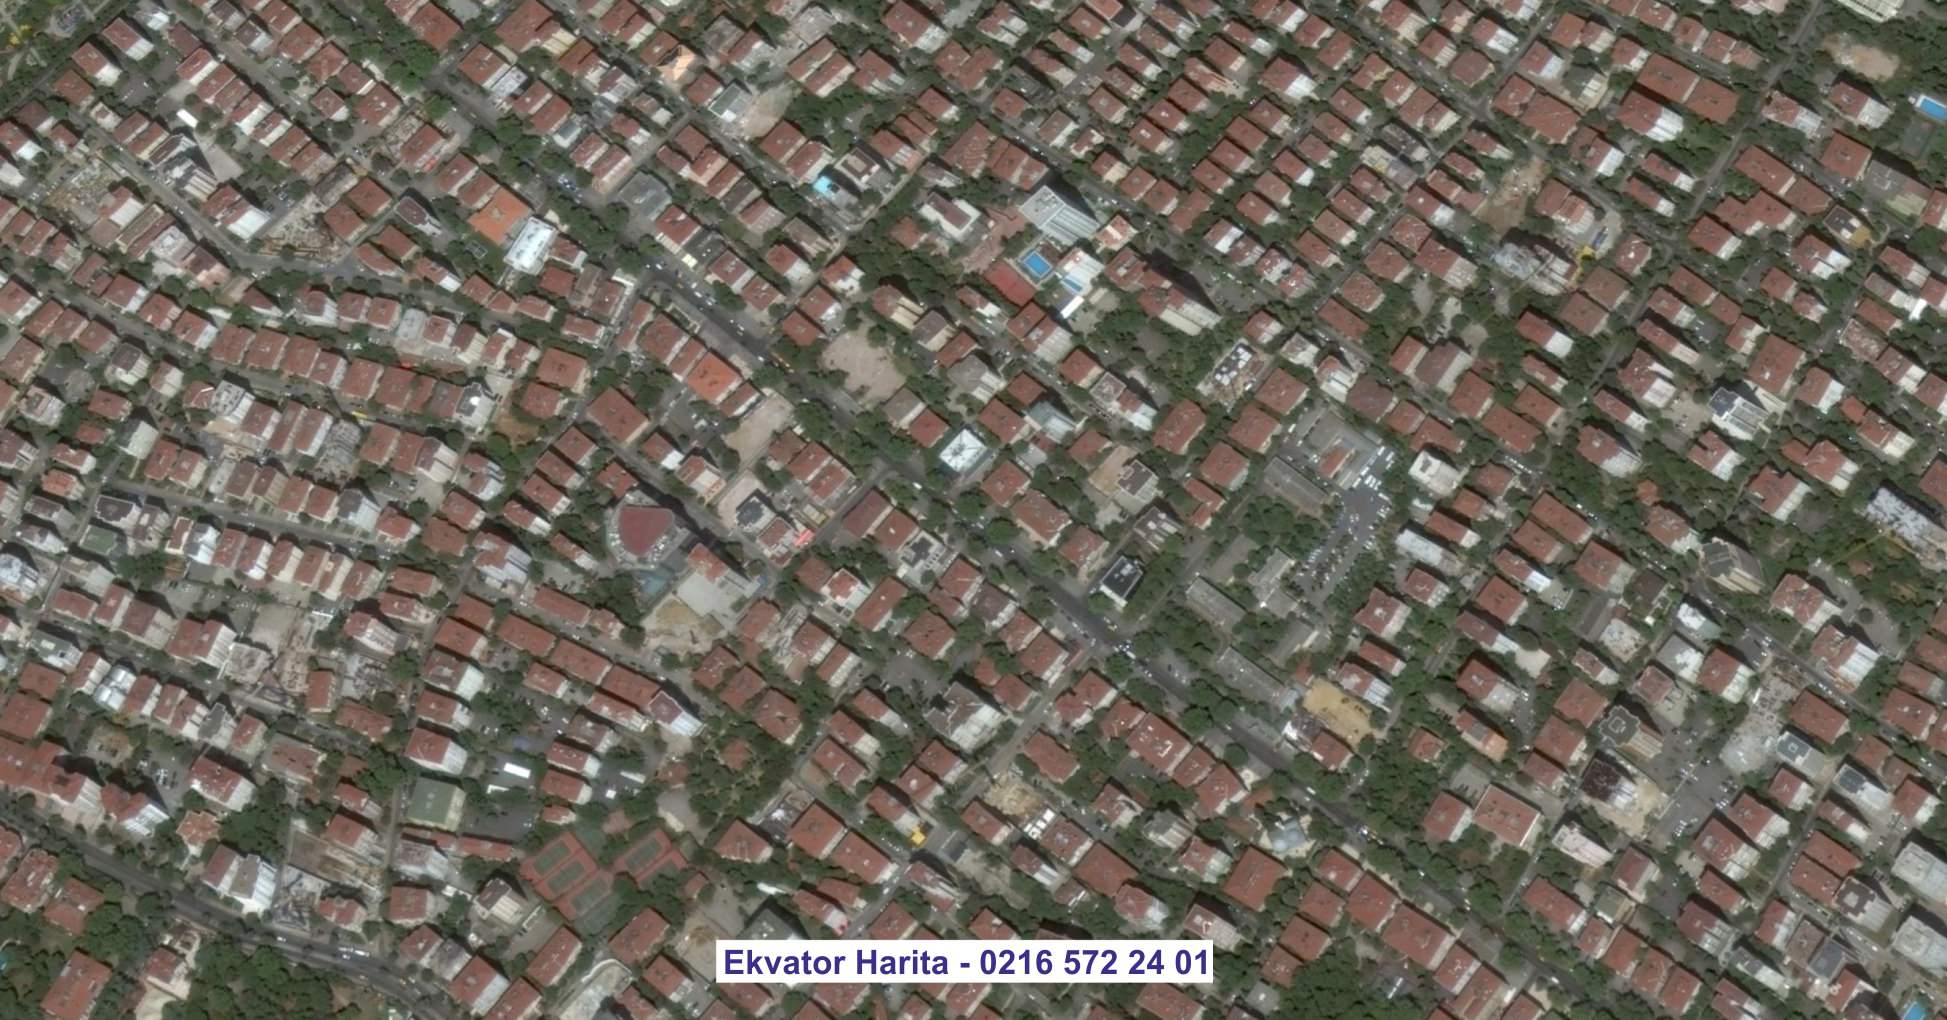 Hama Uydu Görüntüsü Örnek Fotoğrafı